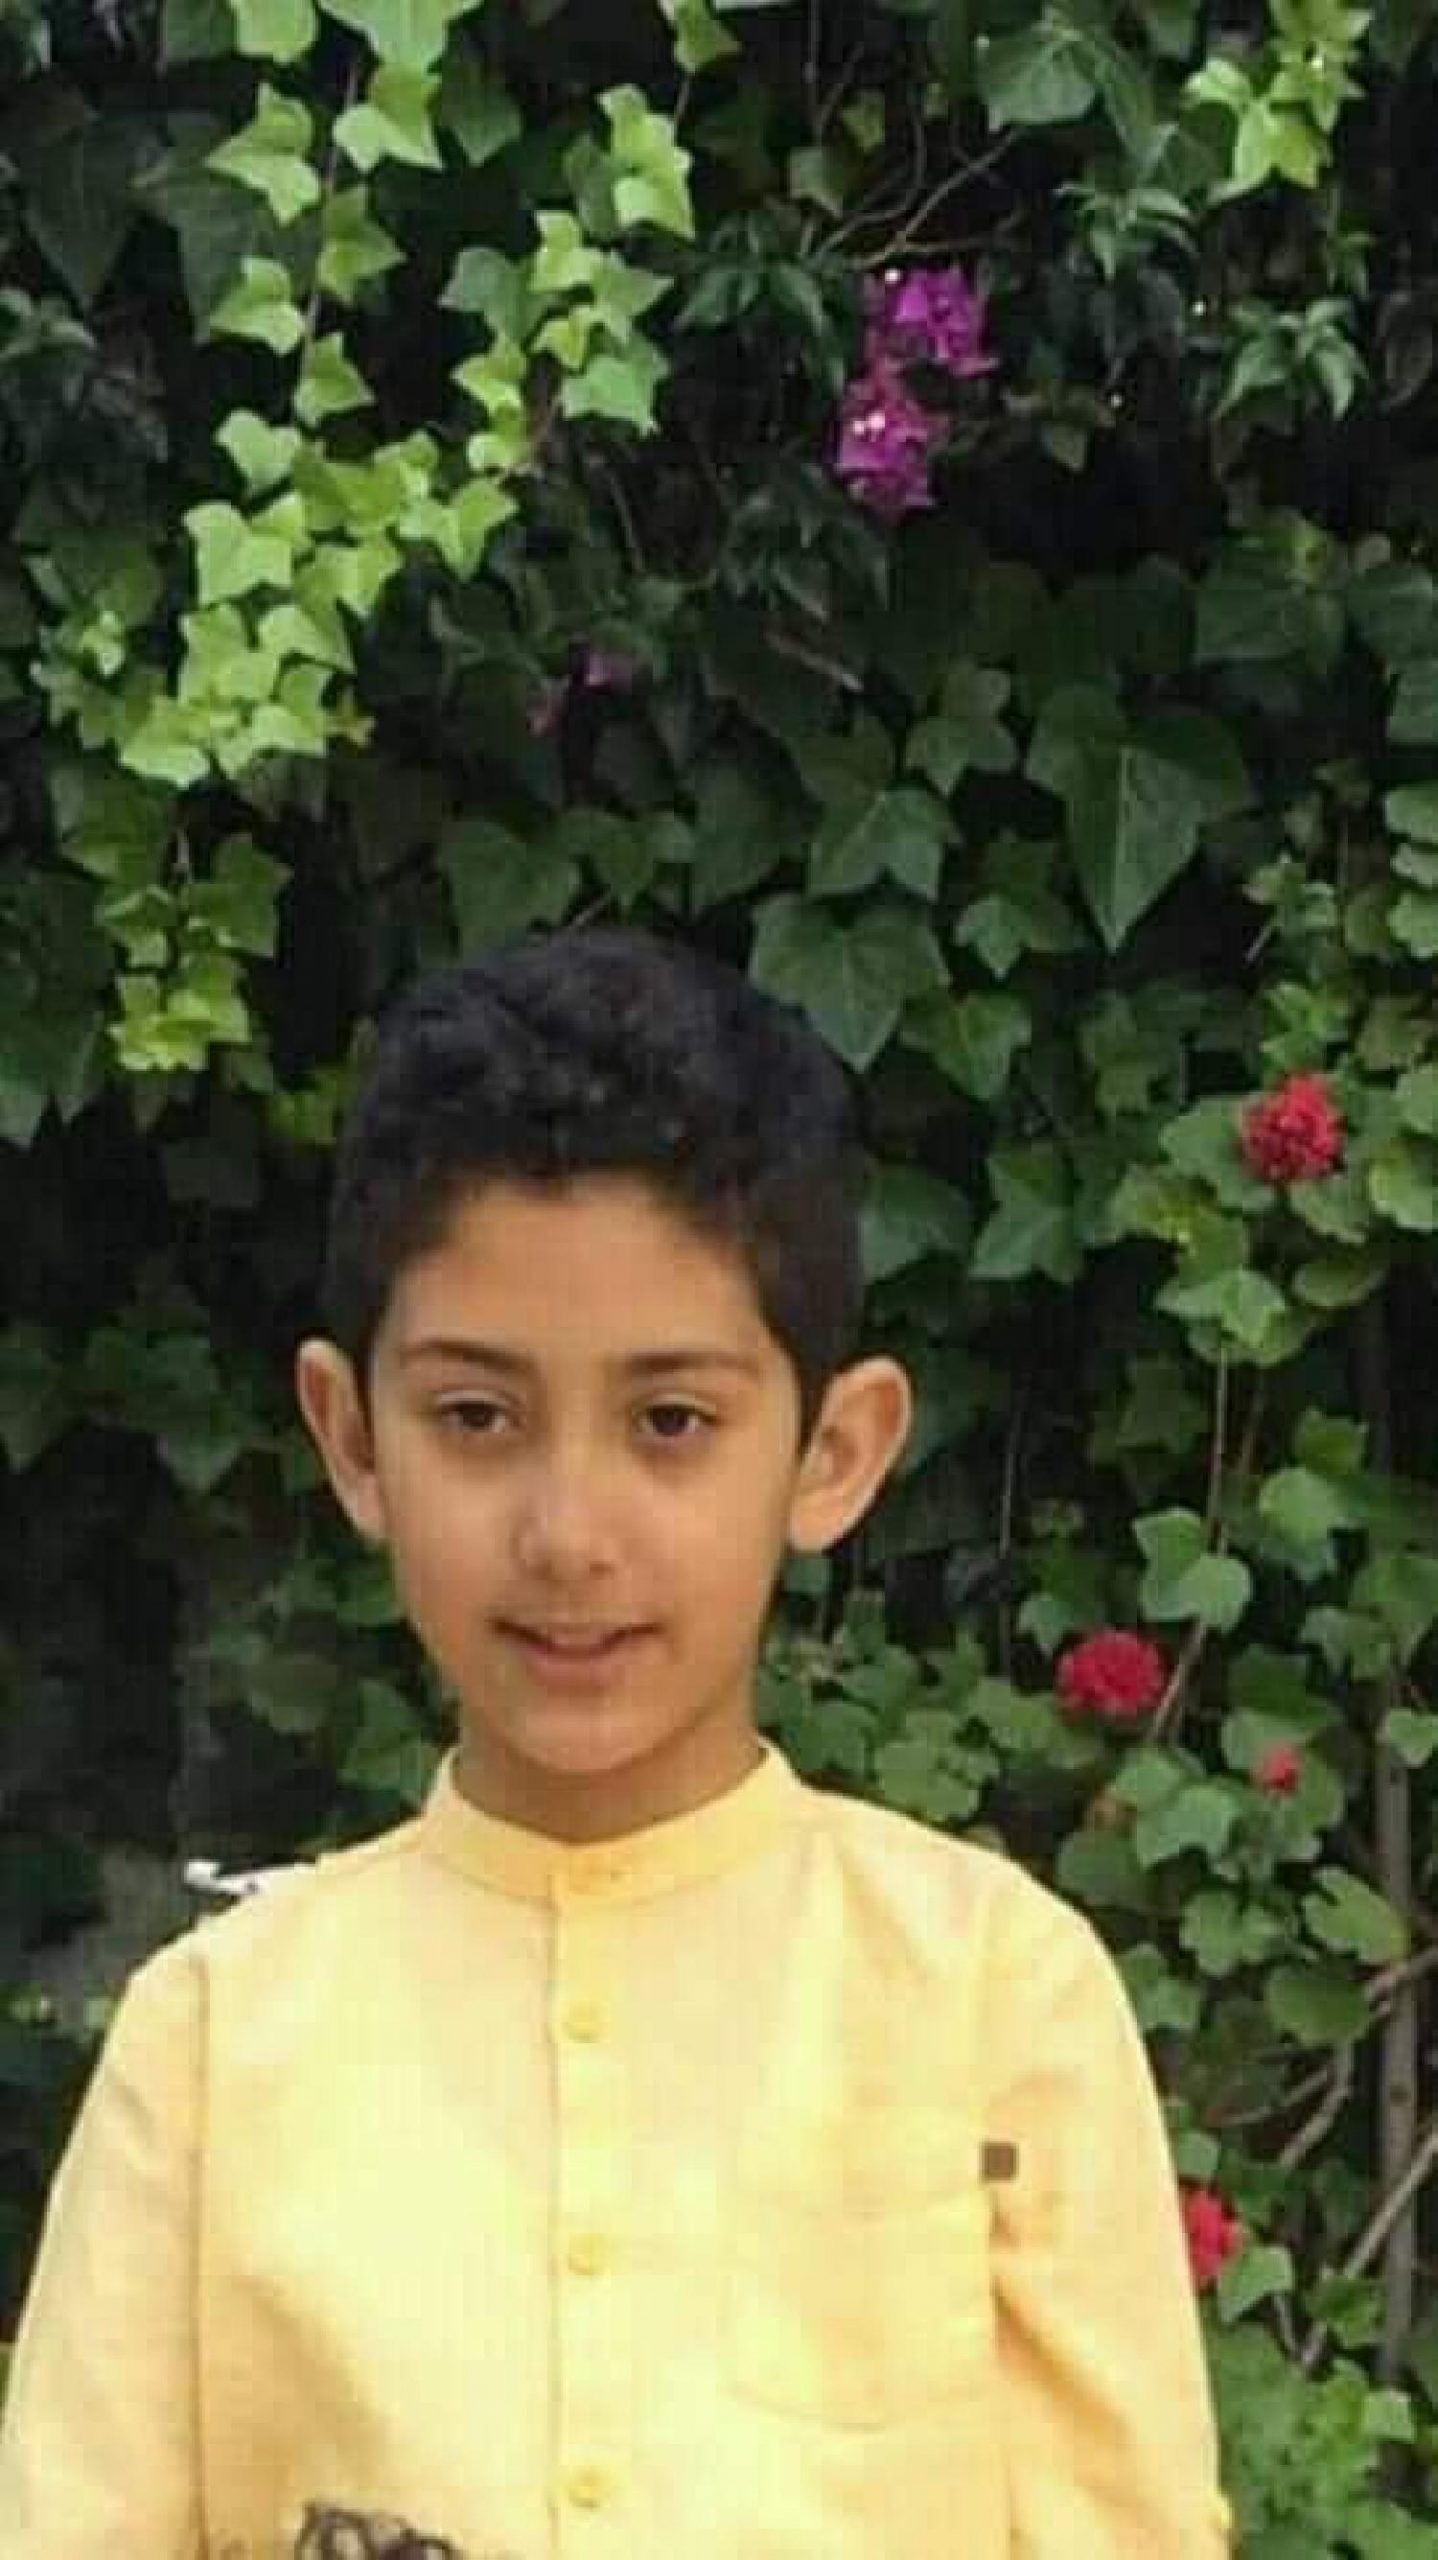 عاجل: العثور على الطفل عدنان مقتولا باحد شوارع طنجة